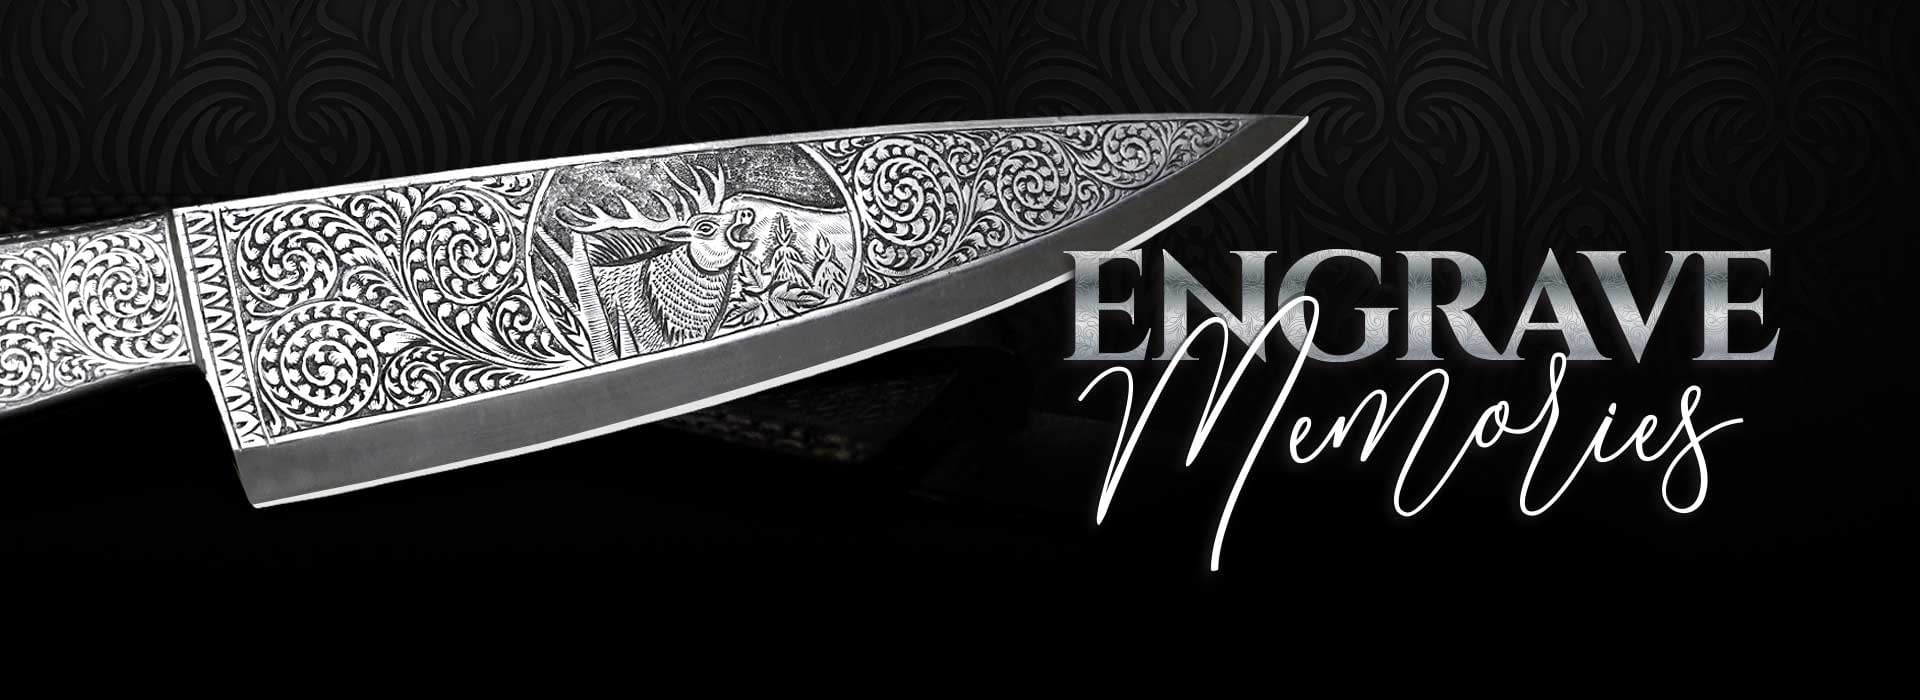 Custom engraved knives